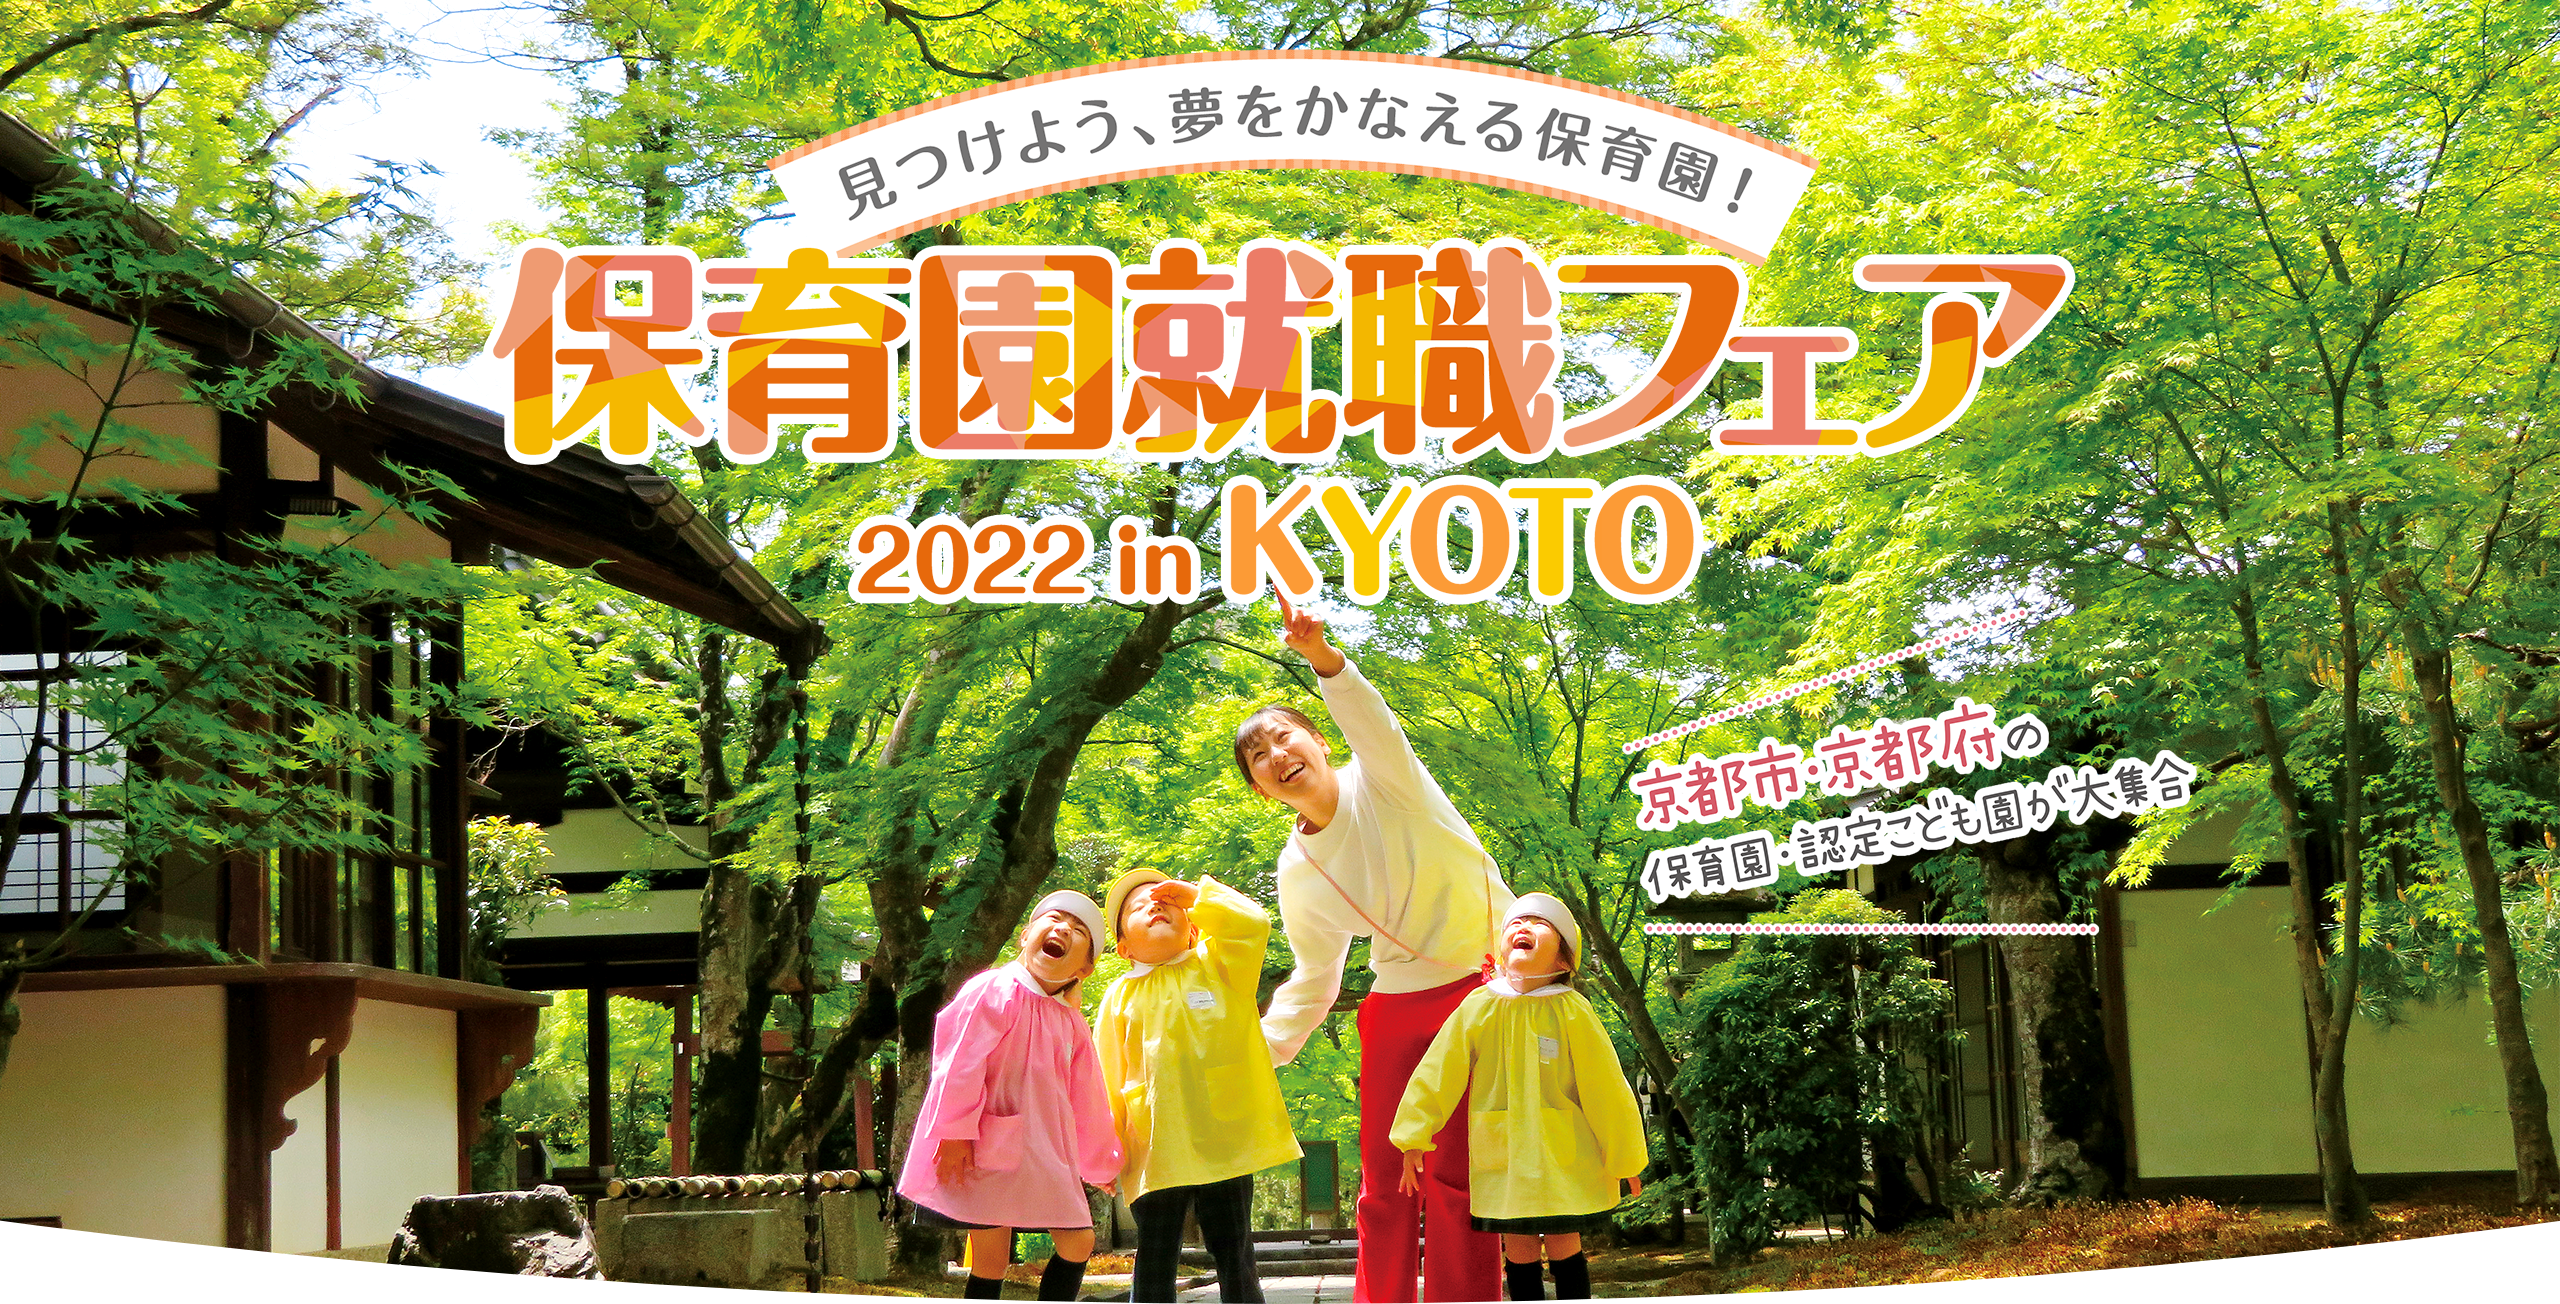 見つけよう、夢をかなえる保育園！保育園就職フェア2022 in KYOTO 京都市・京都府の保育園・認定こども園が大集合